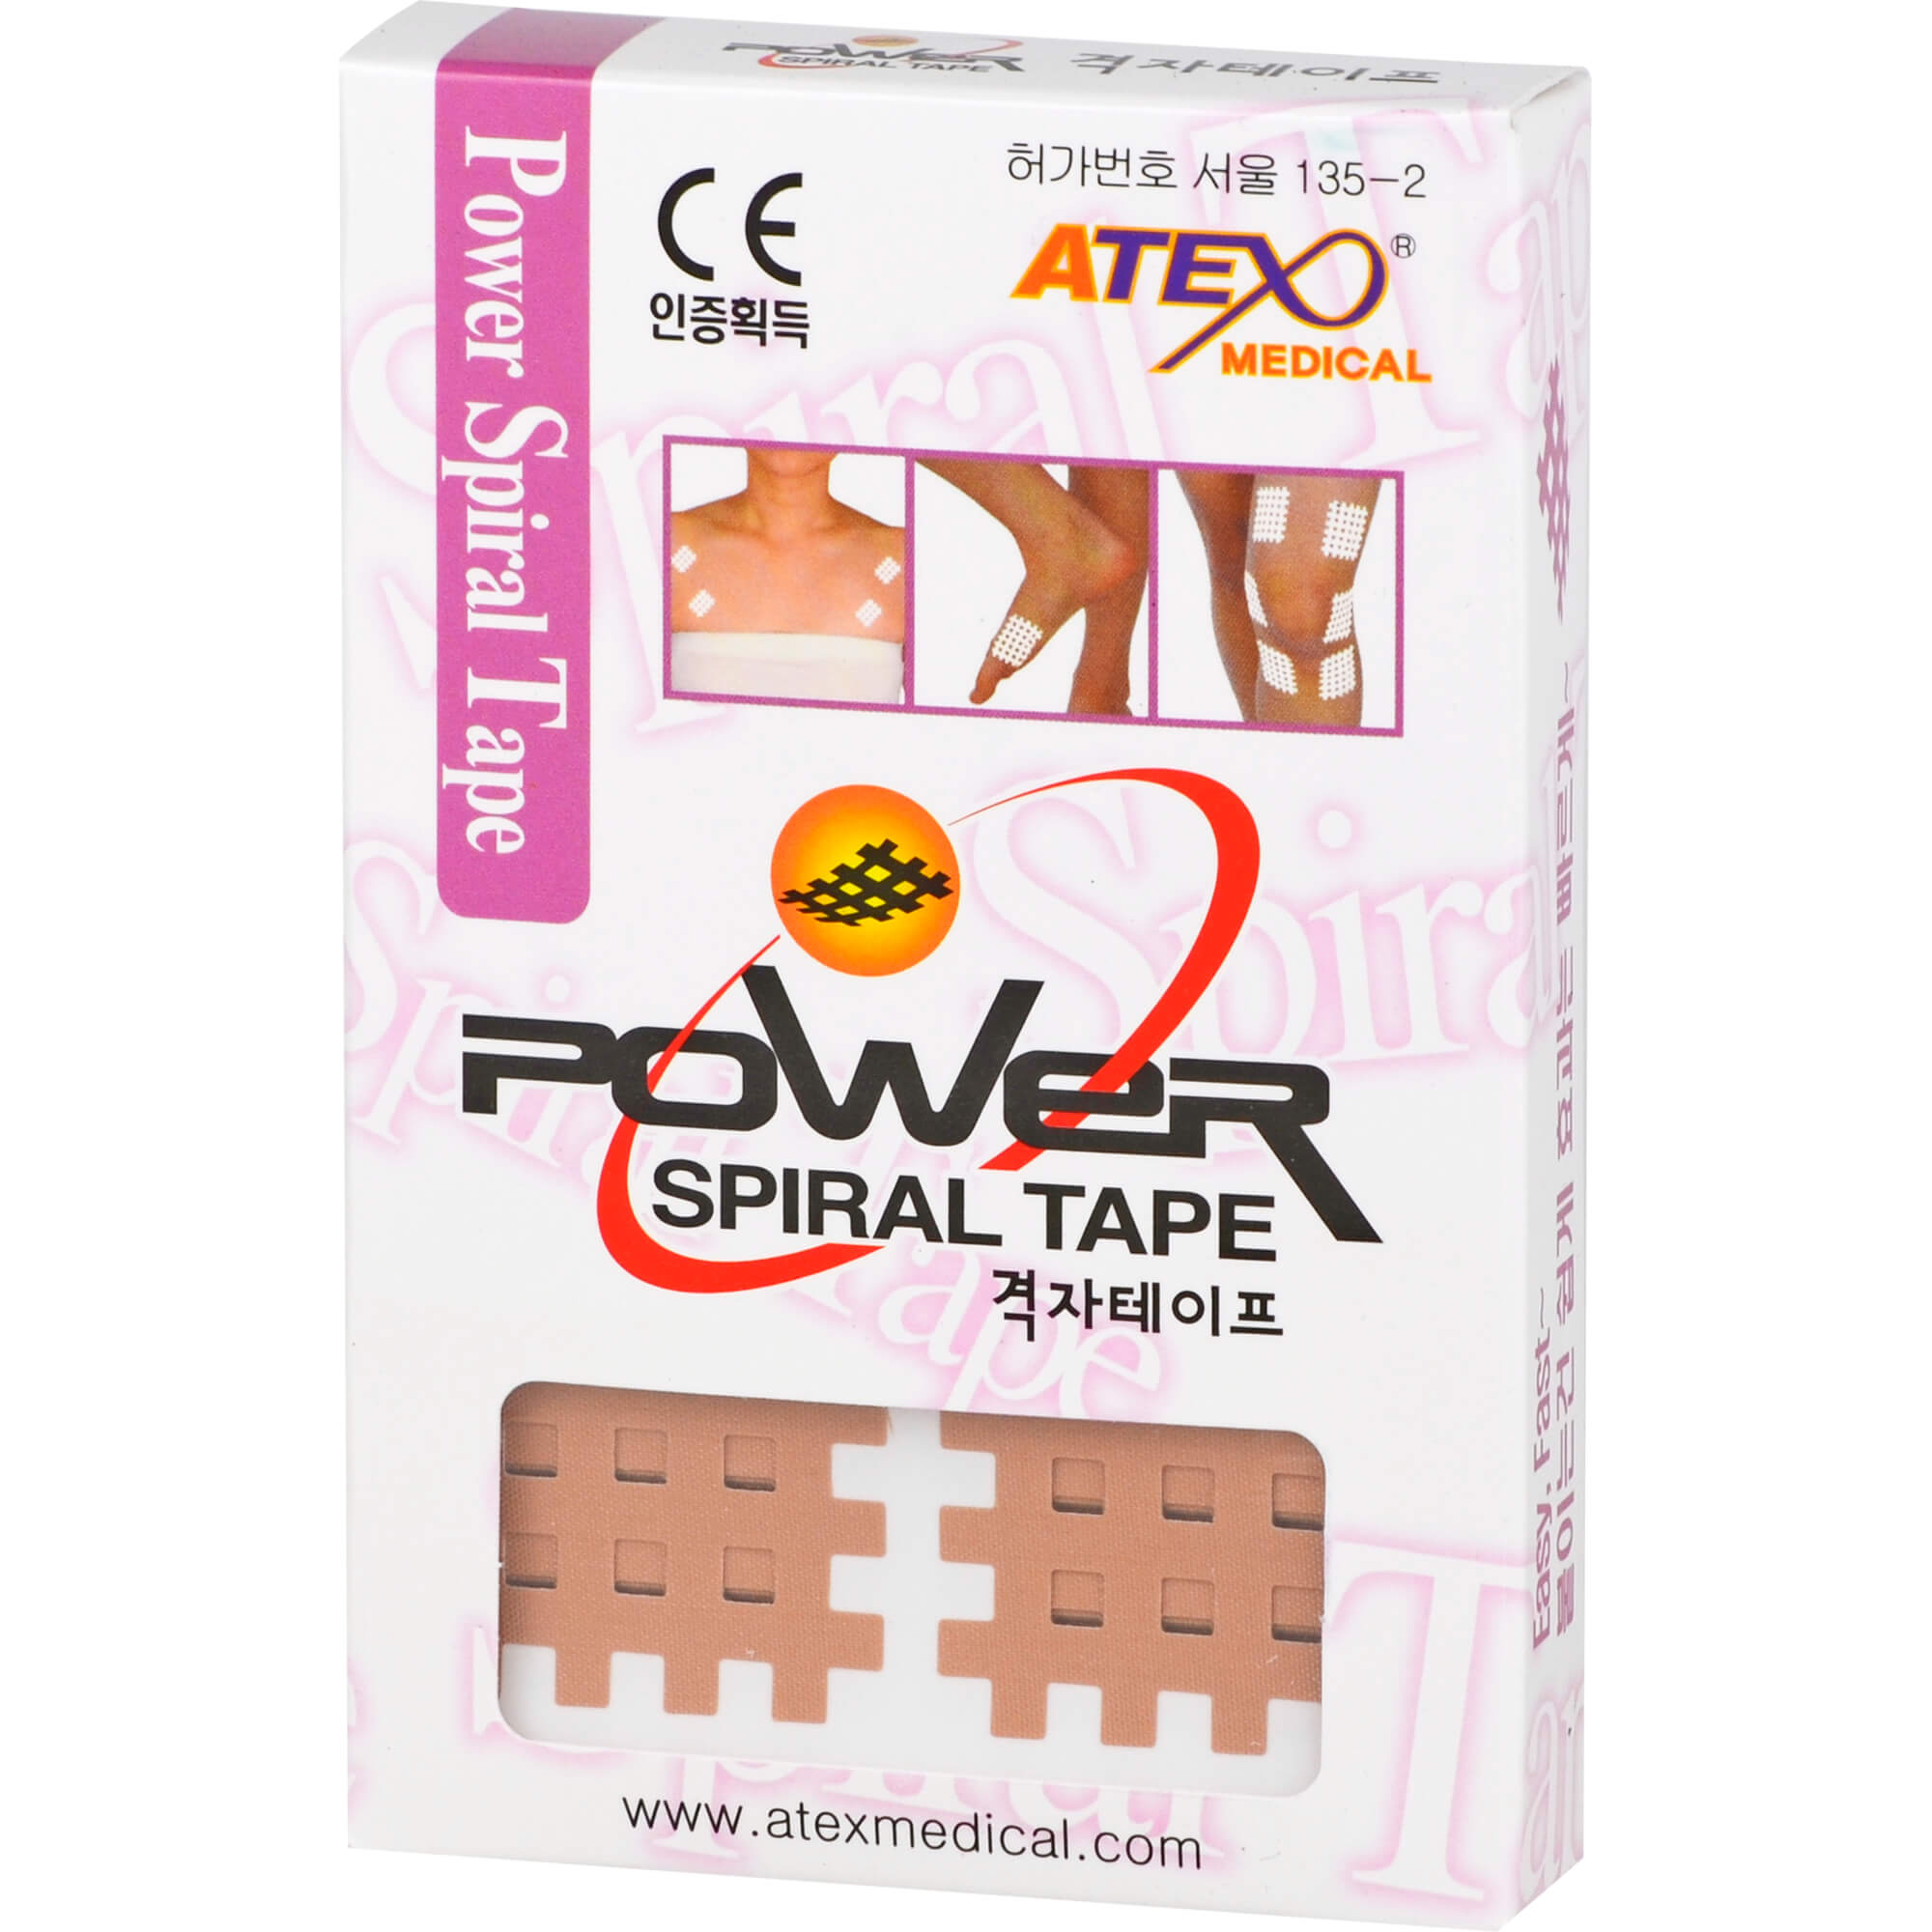 GITTER Tape Power Spiral Tape ATEX 28x36 mm